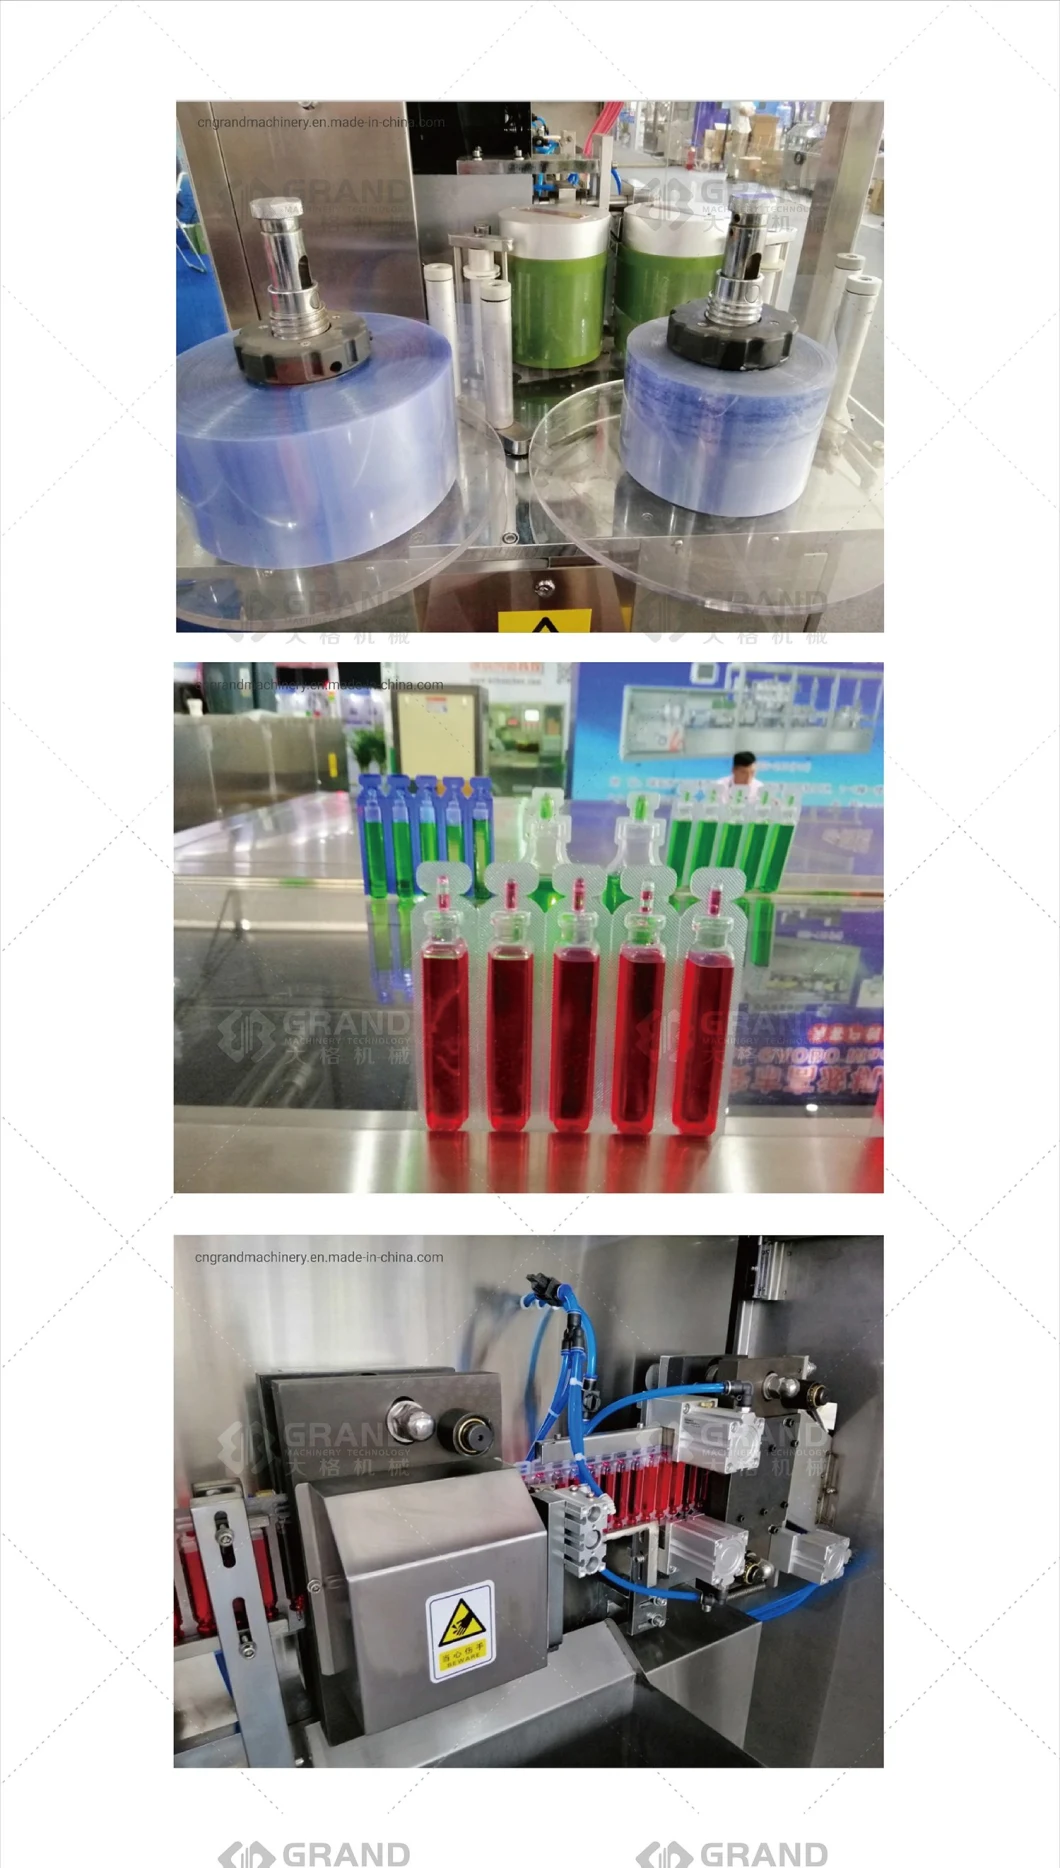 GGS-118 P5 Αυτόματη παρασιτοκτόνα υγρή πλαστική πλαστική φιάλη Αμπούλια που σχηματίζει μηχανή σφράγισης για γεωργική χημική ουσία με μηχανήματα αυτόματης επισήμανσης